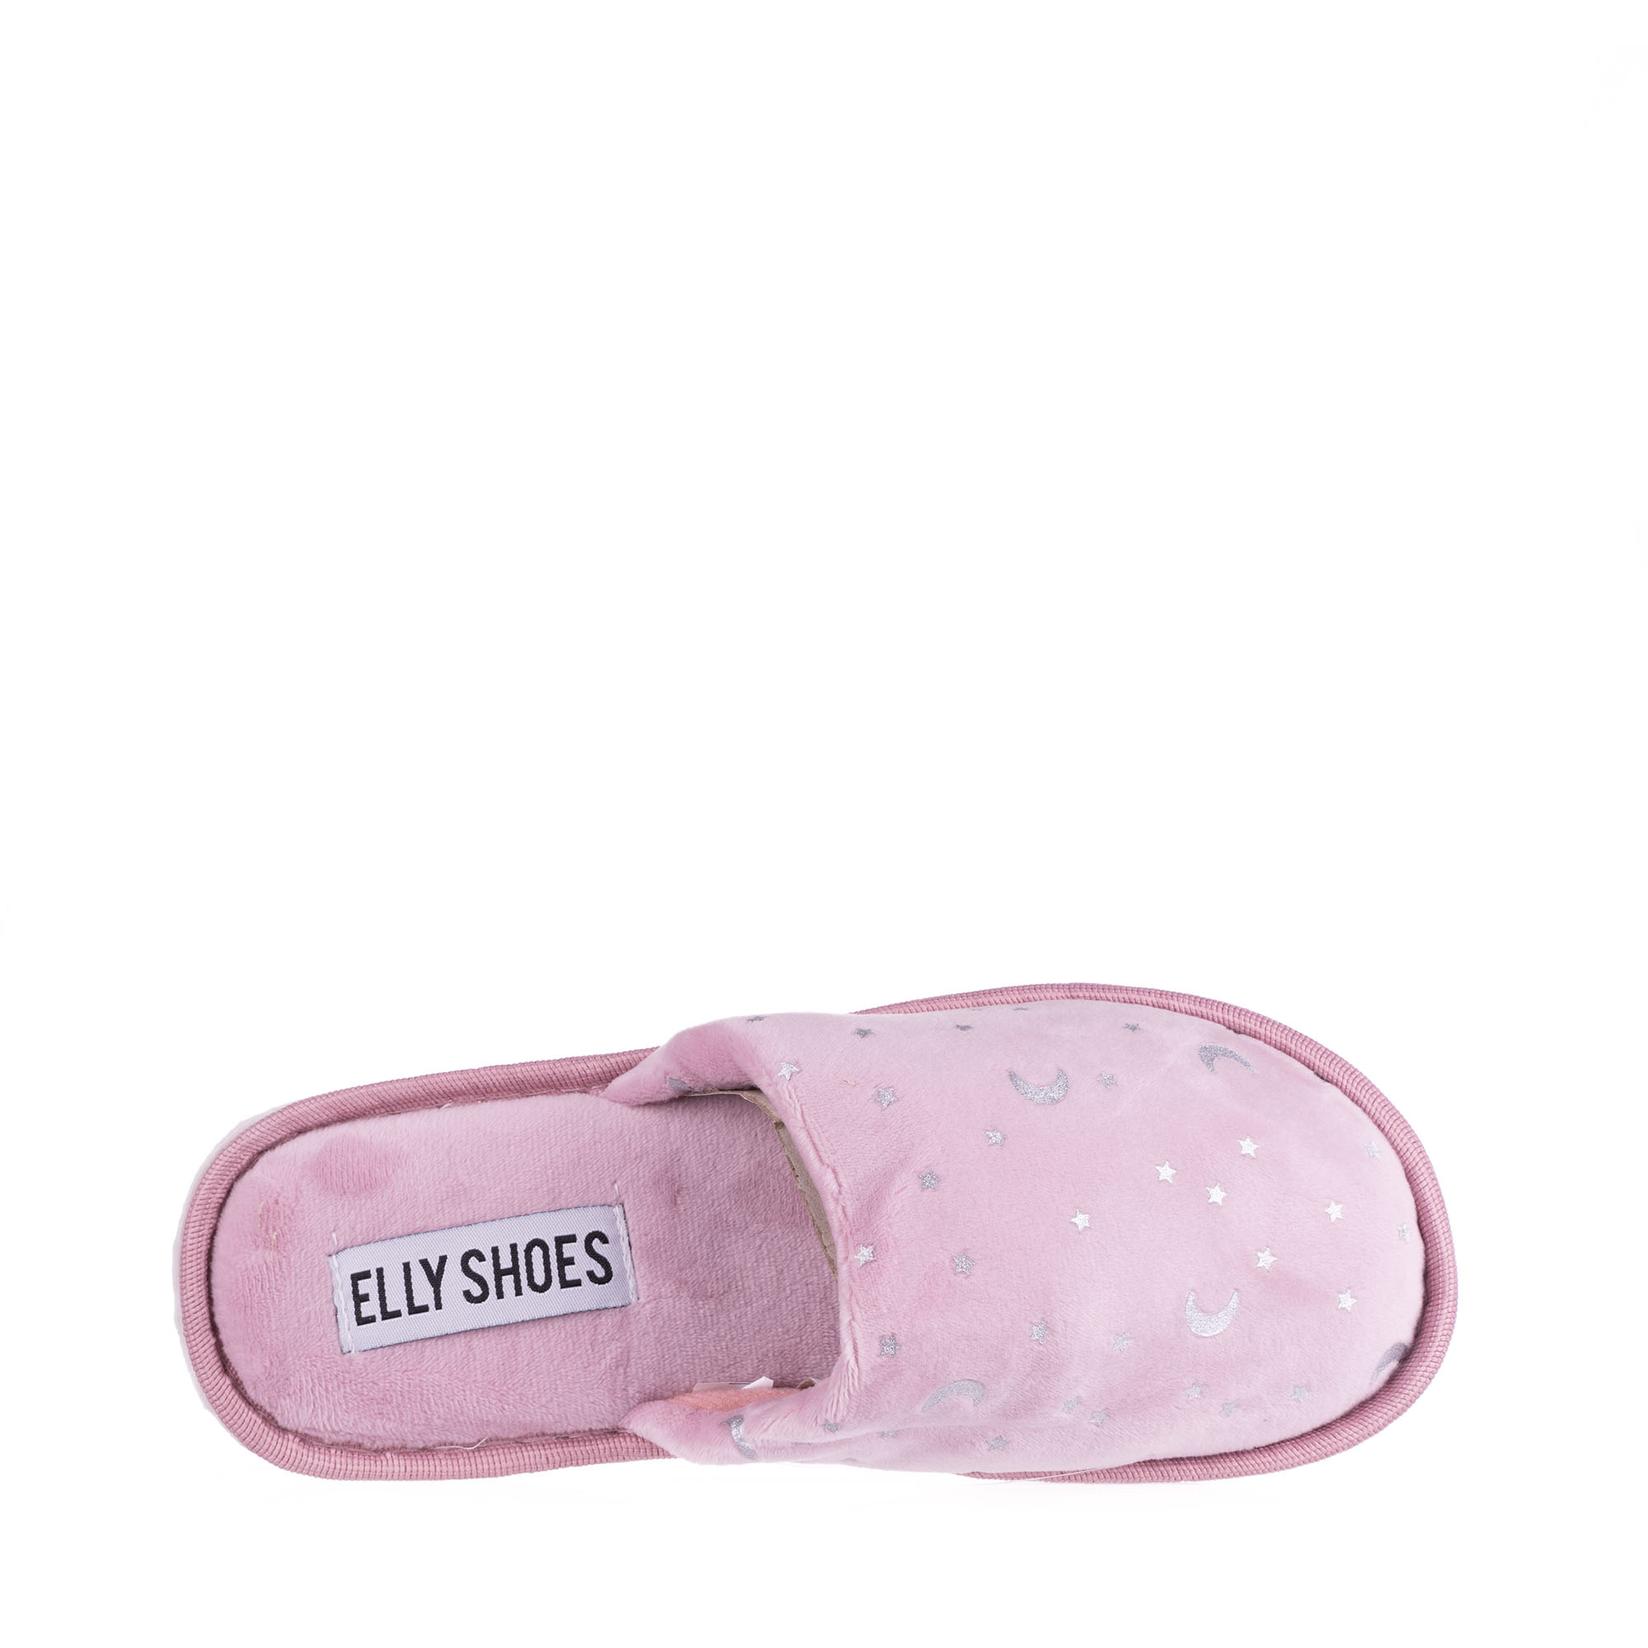 Selected image for ELLY SHOES Ženske kućne papuče N72470, Roze